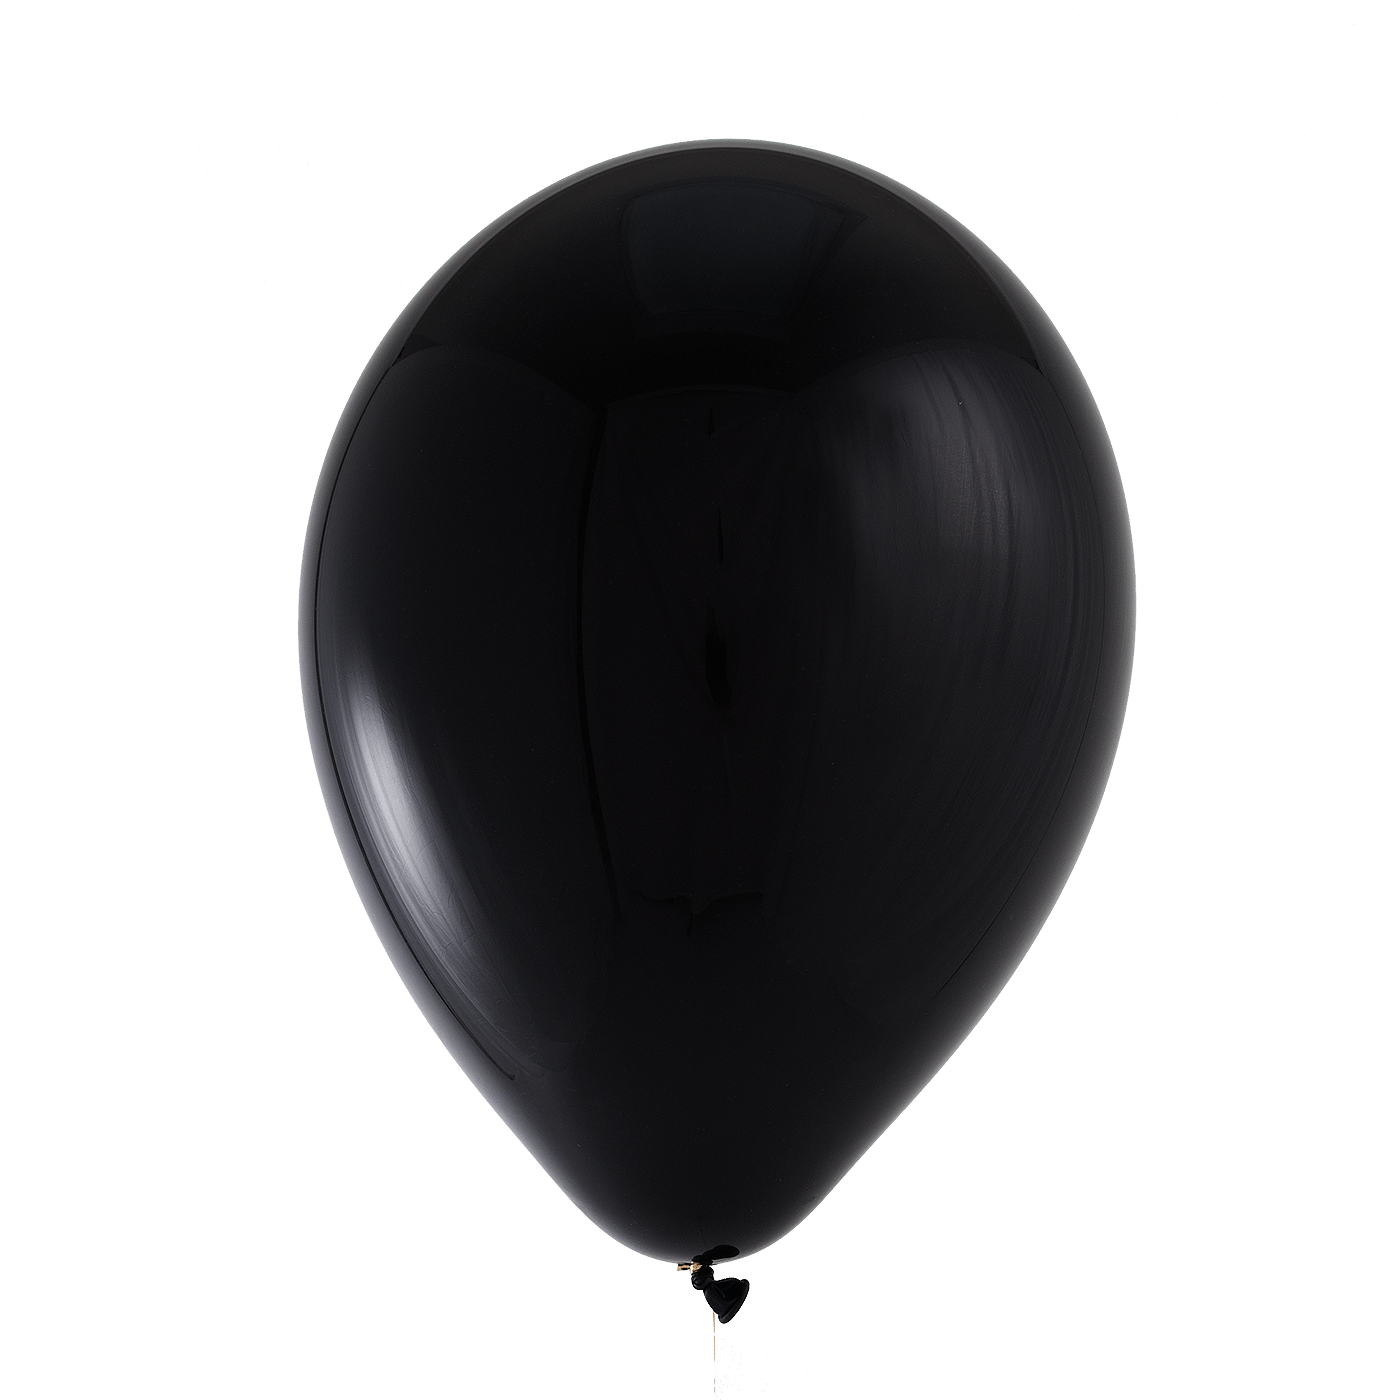 “Черный шар” (the Black Balloon), 2008. Черный воздушный шар. Белый шар на черном фоне. Черный шар без фона. Про черного шарика